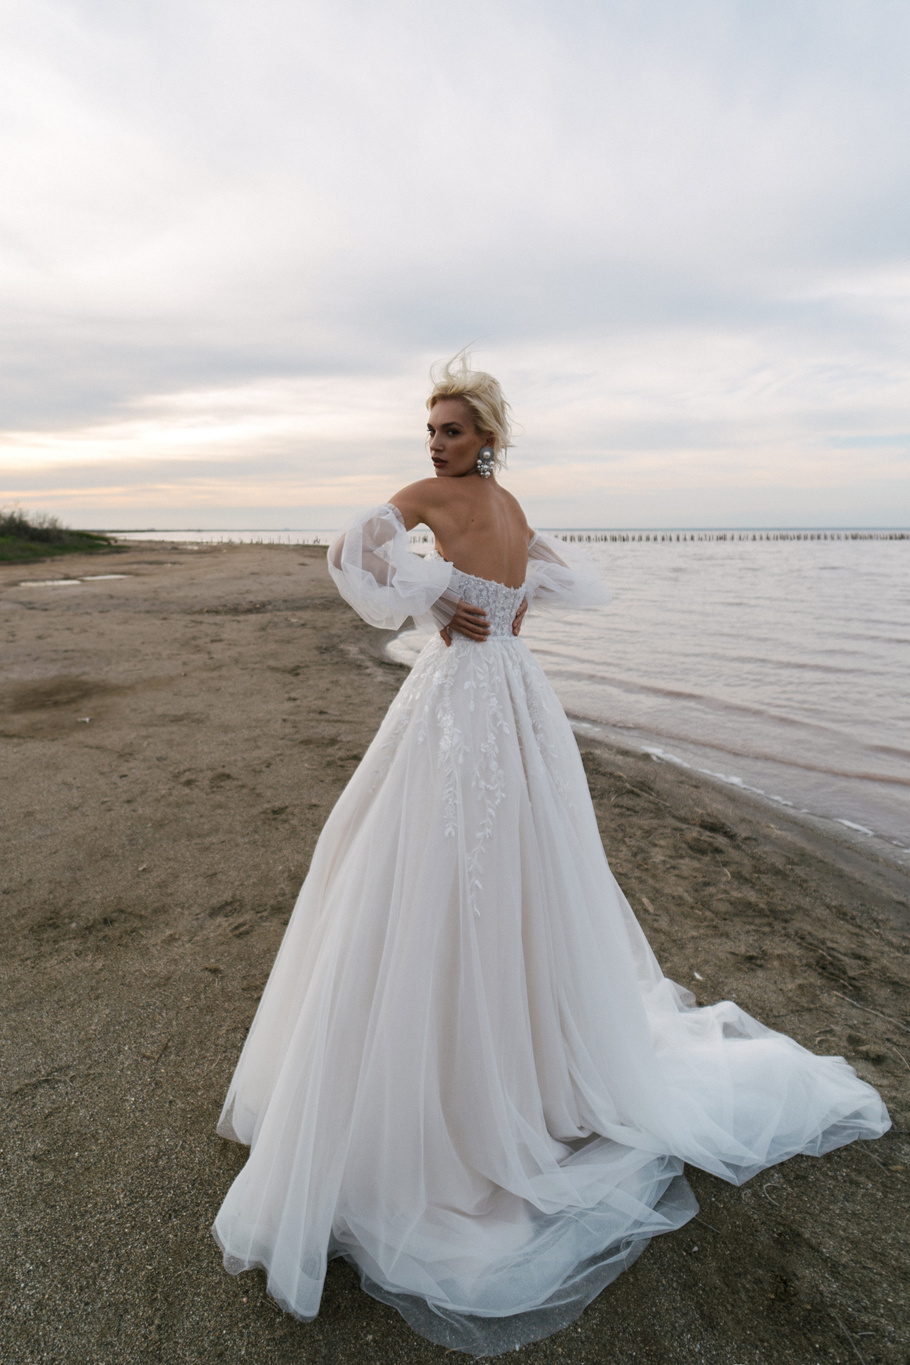 Купить свадебное платье «Вайолет» Наталья Романова из коллекции Блаш 2022 года в салоне «Мэри Трюфель»